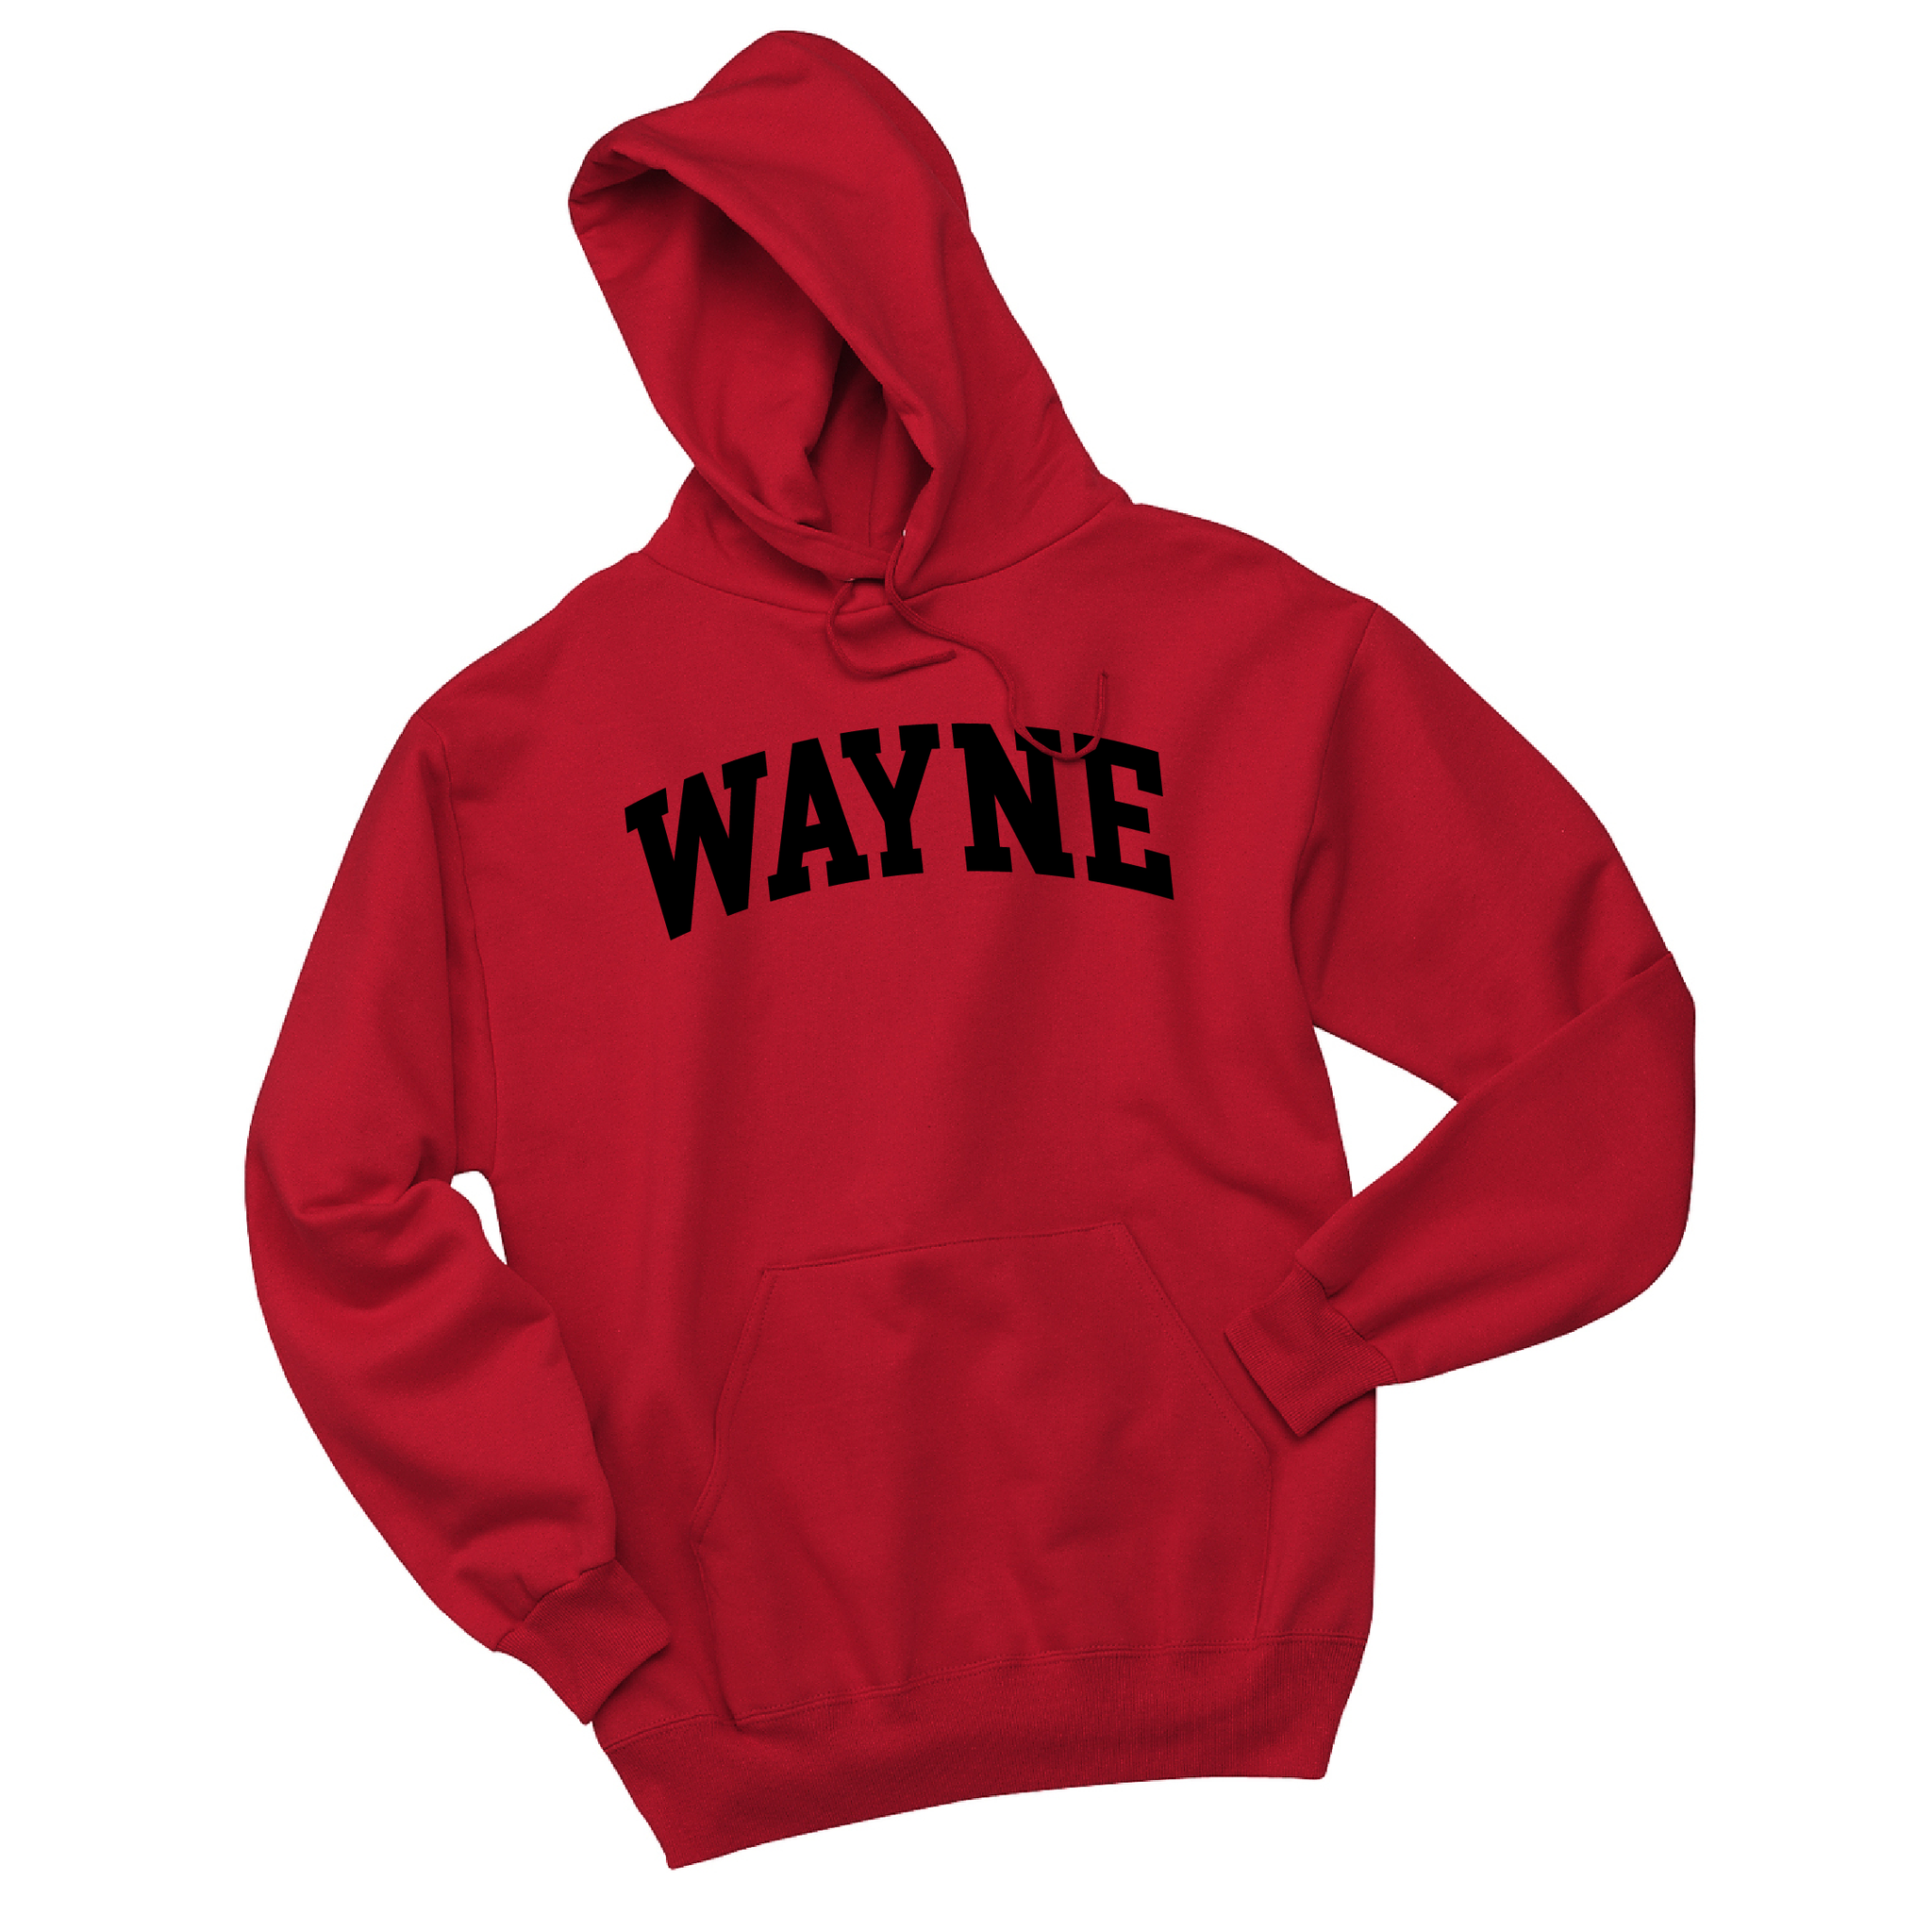 Wayne Hoodie